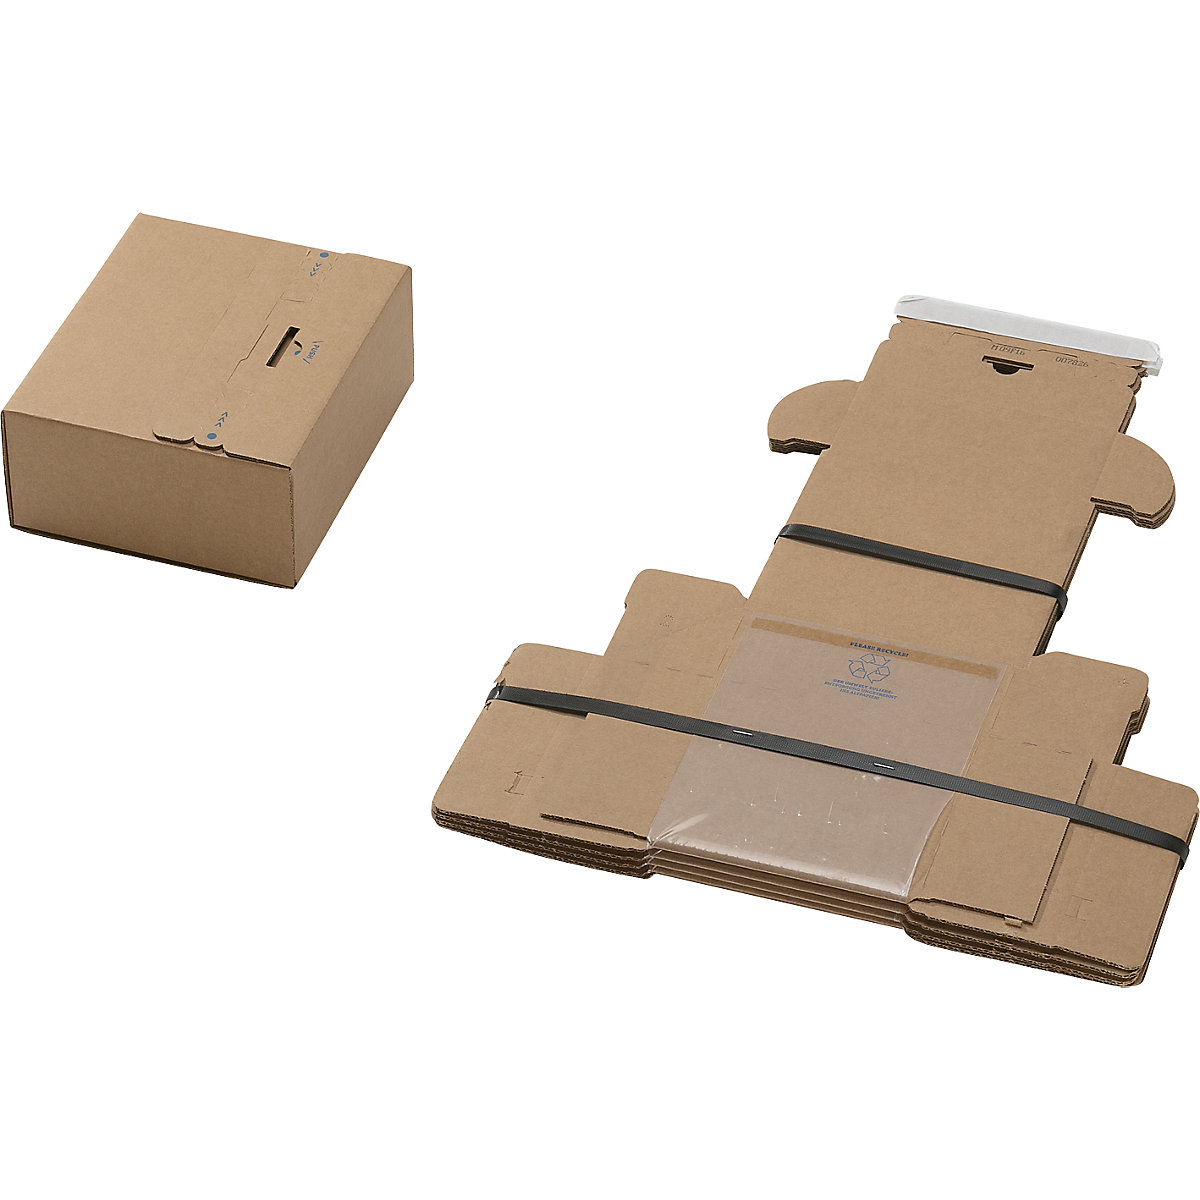 Embalagem de fixação, ''all in one'', embalagem de 40 unidades, para dimensões da embalagem CxLxA 140 x 110 x 50 mm-2